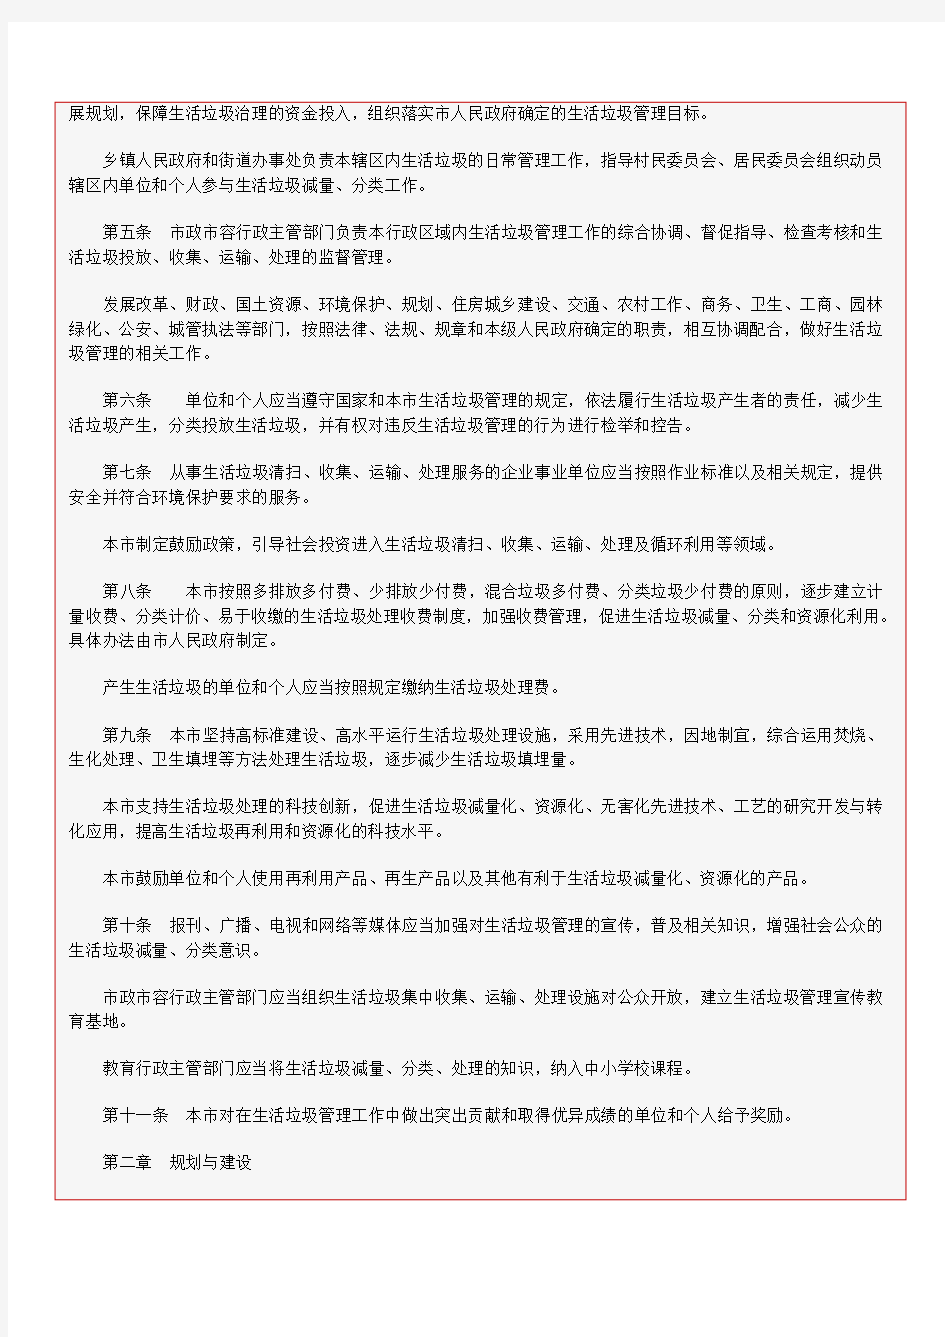 北京市生活垃圾管理条例 Microsoft Office Word 97 - 2003 文档